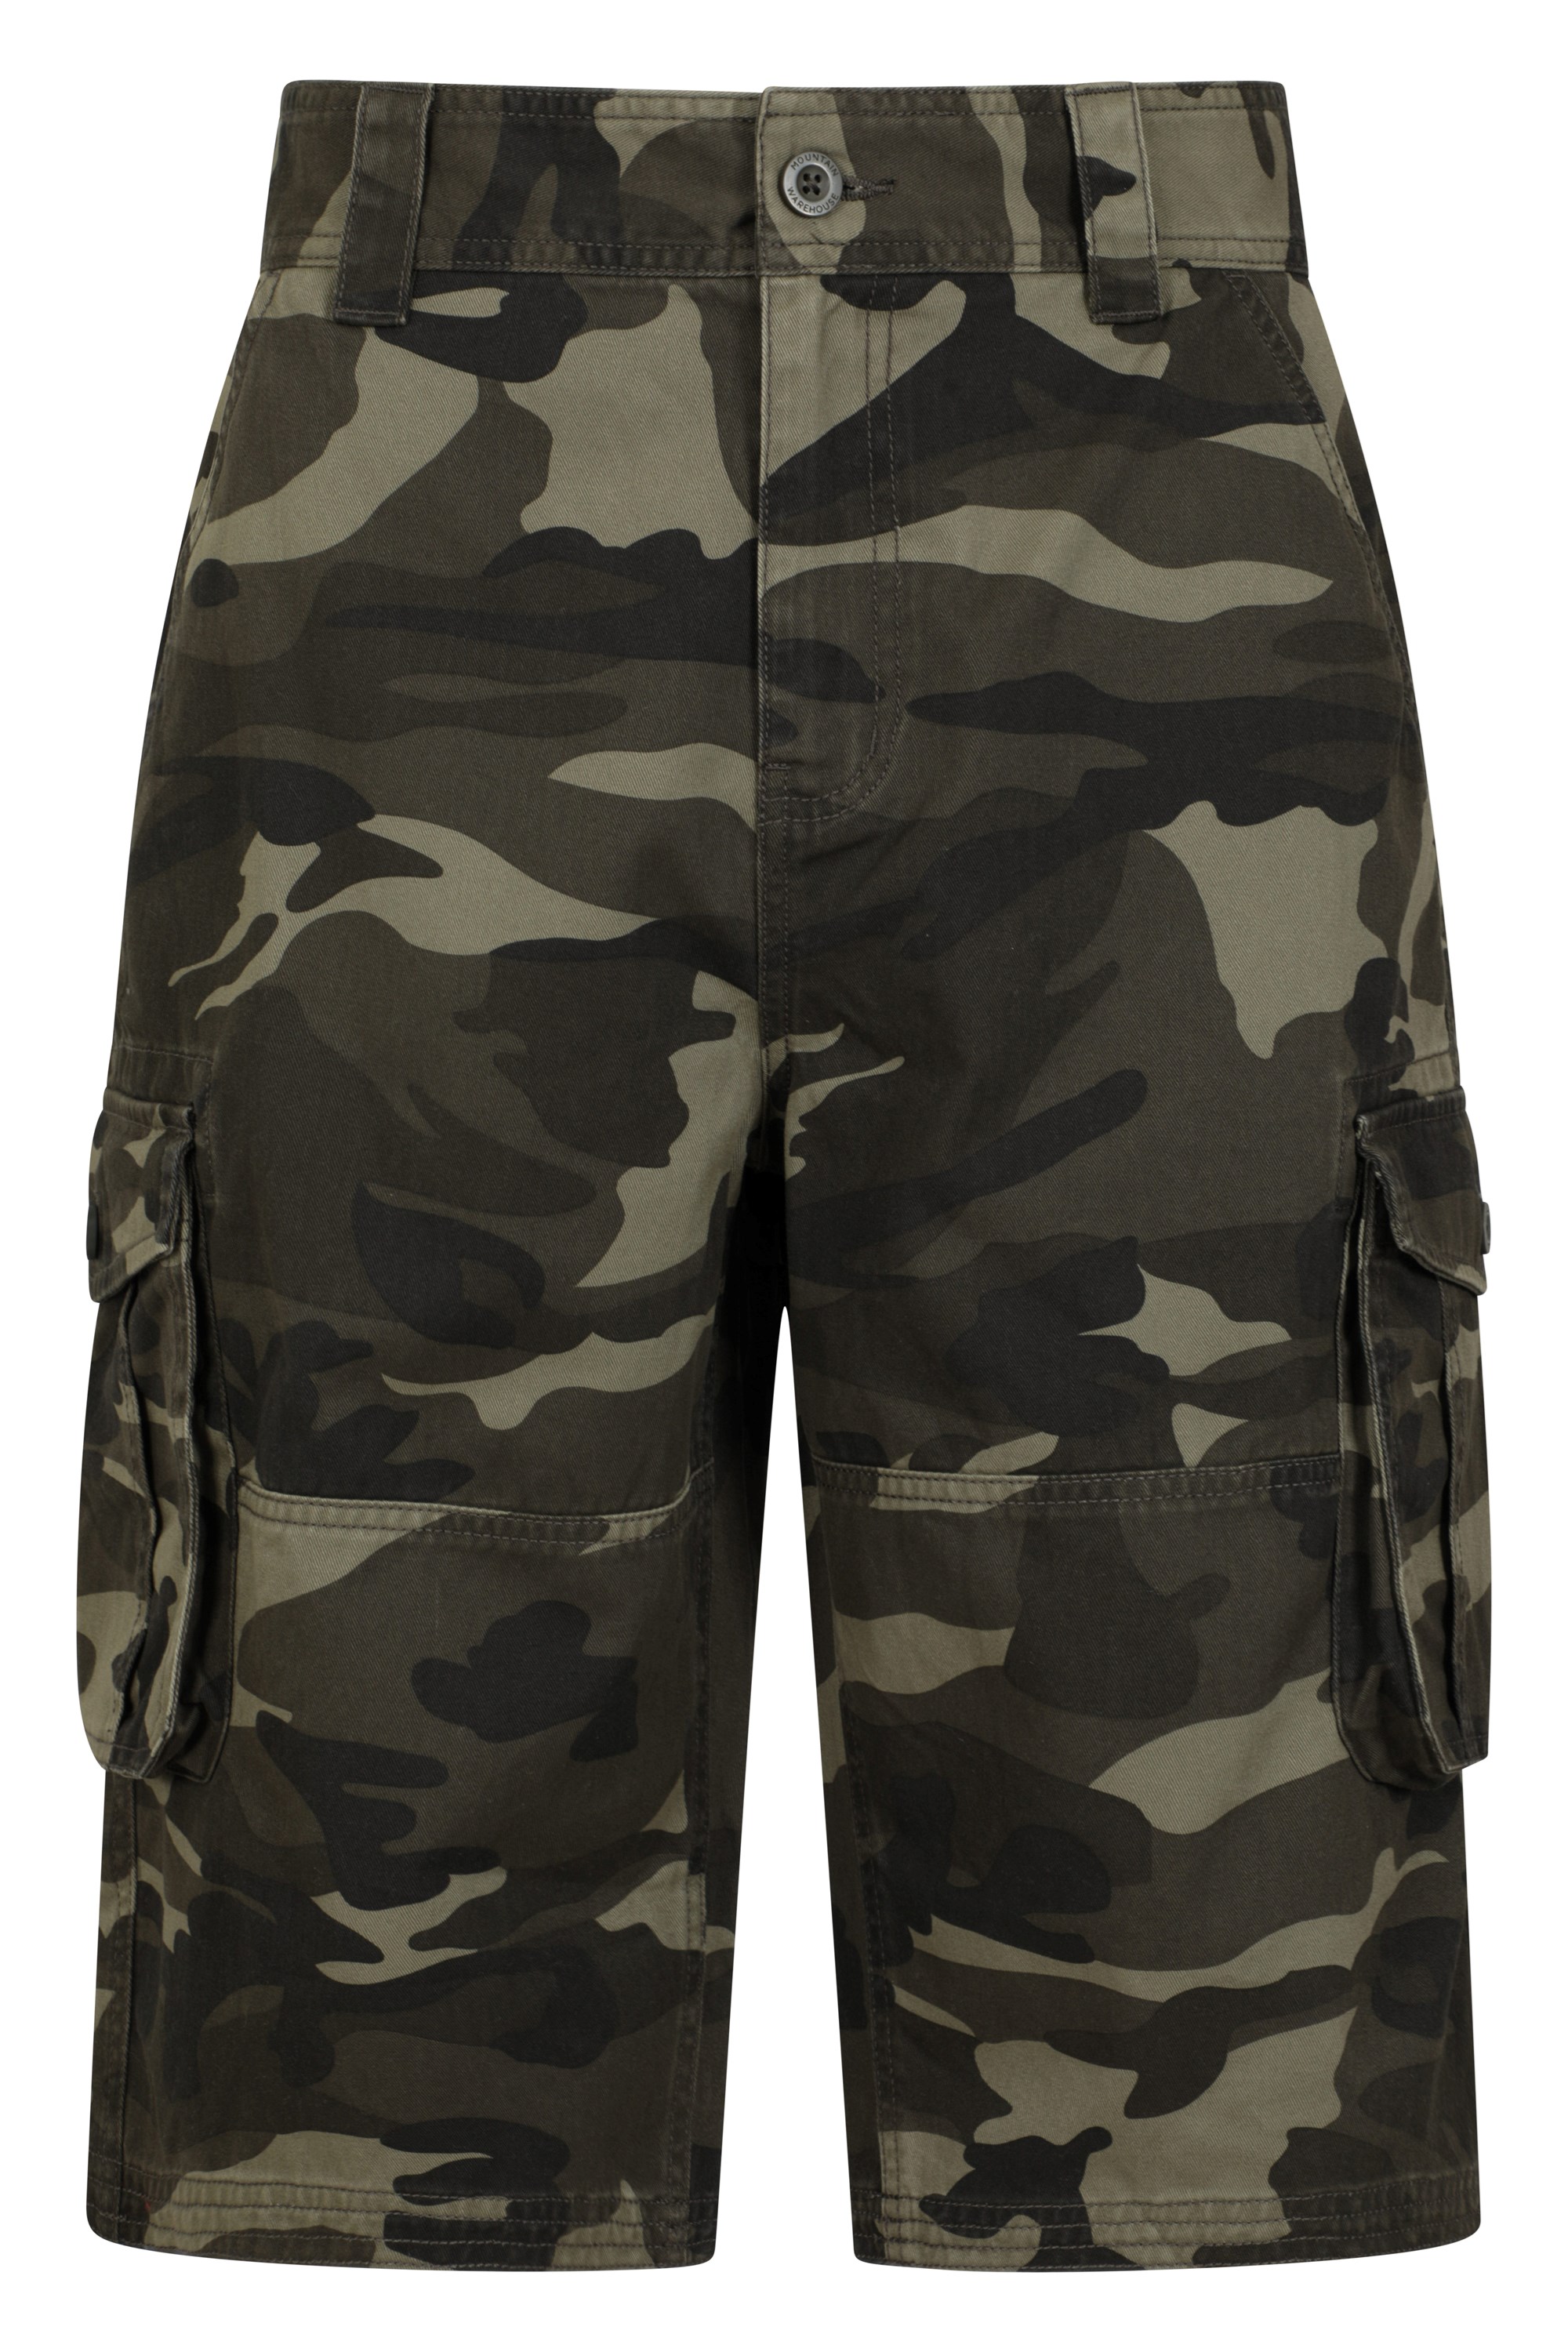 Mountain Warehouse Mens Camo Cargo Shorts - Green | Size W42